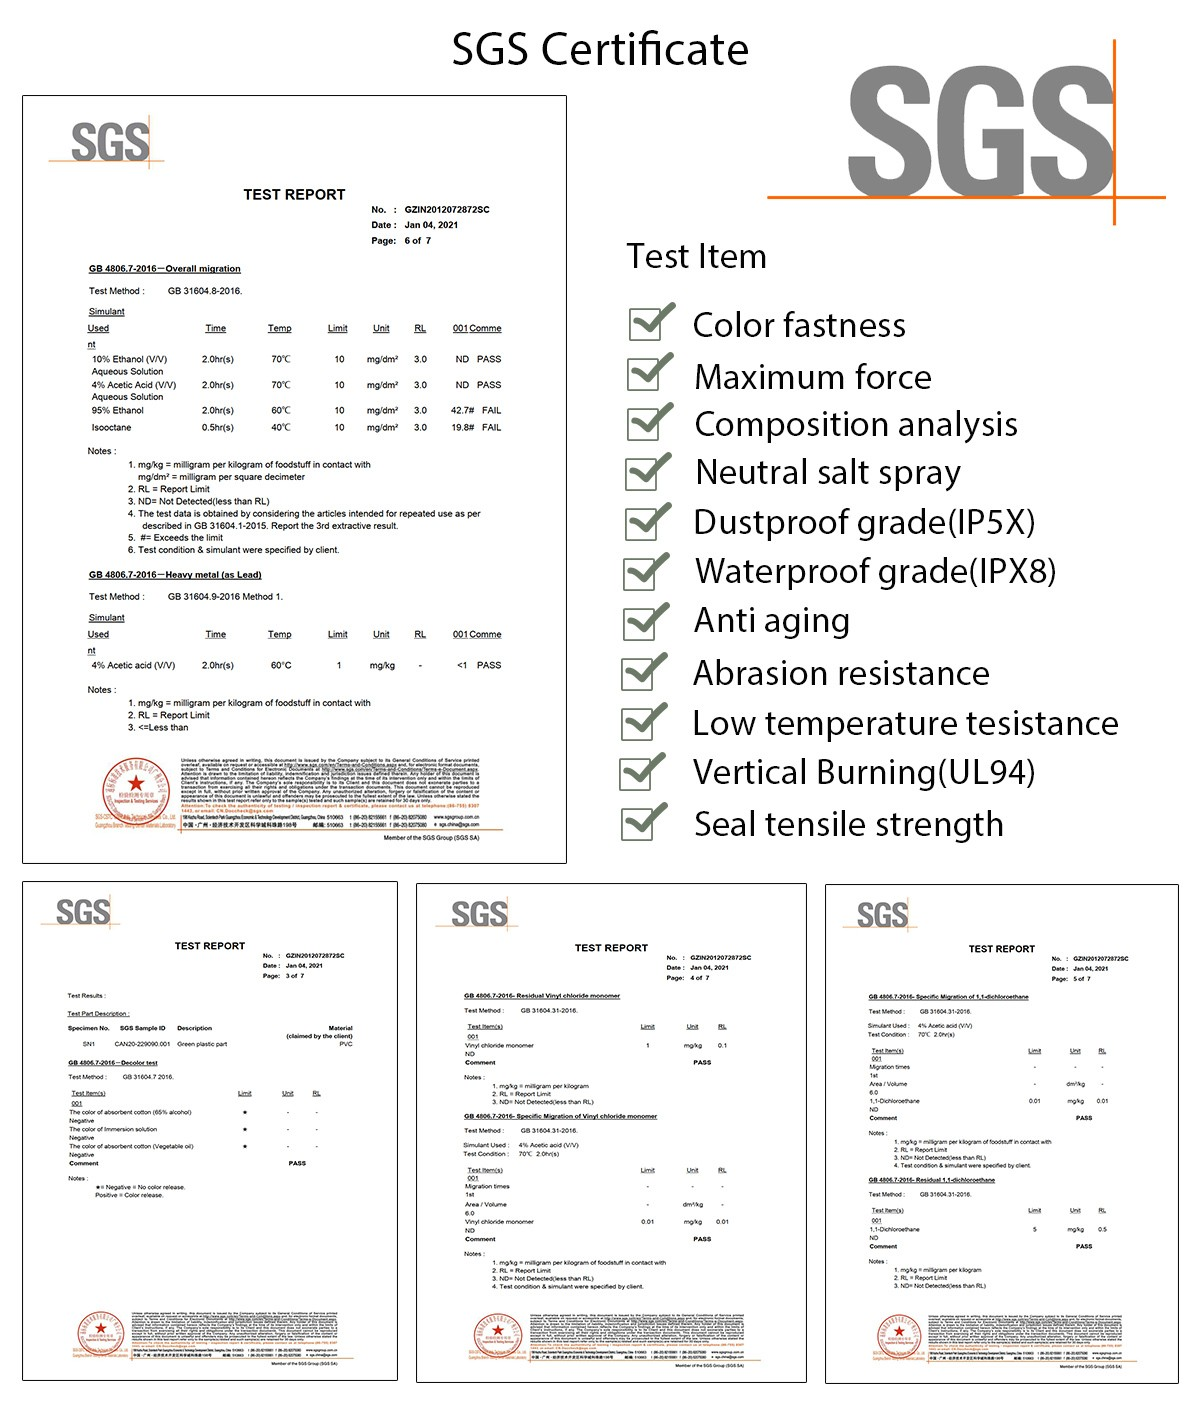 SGS testing report